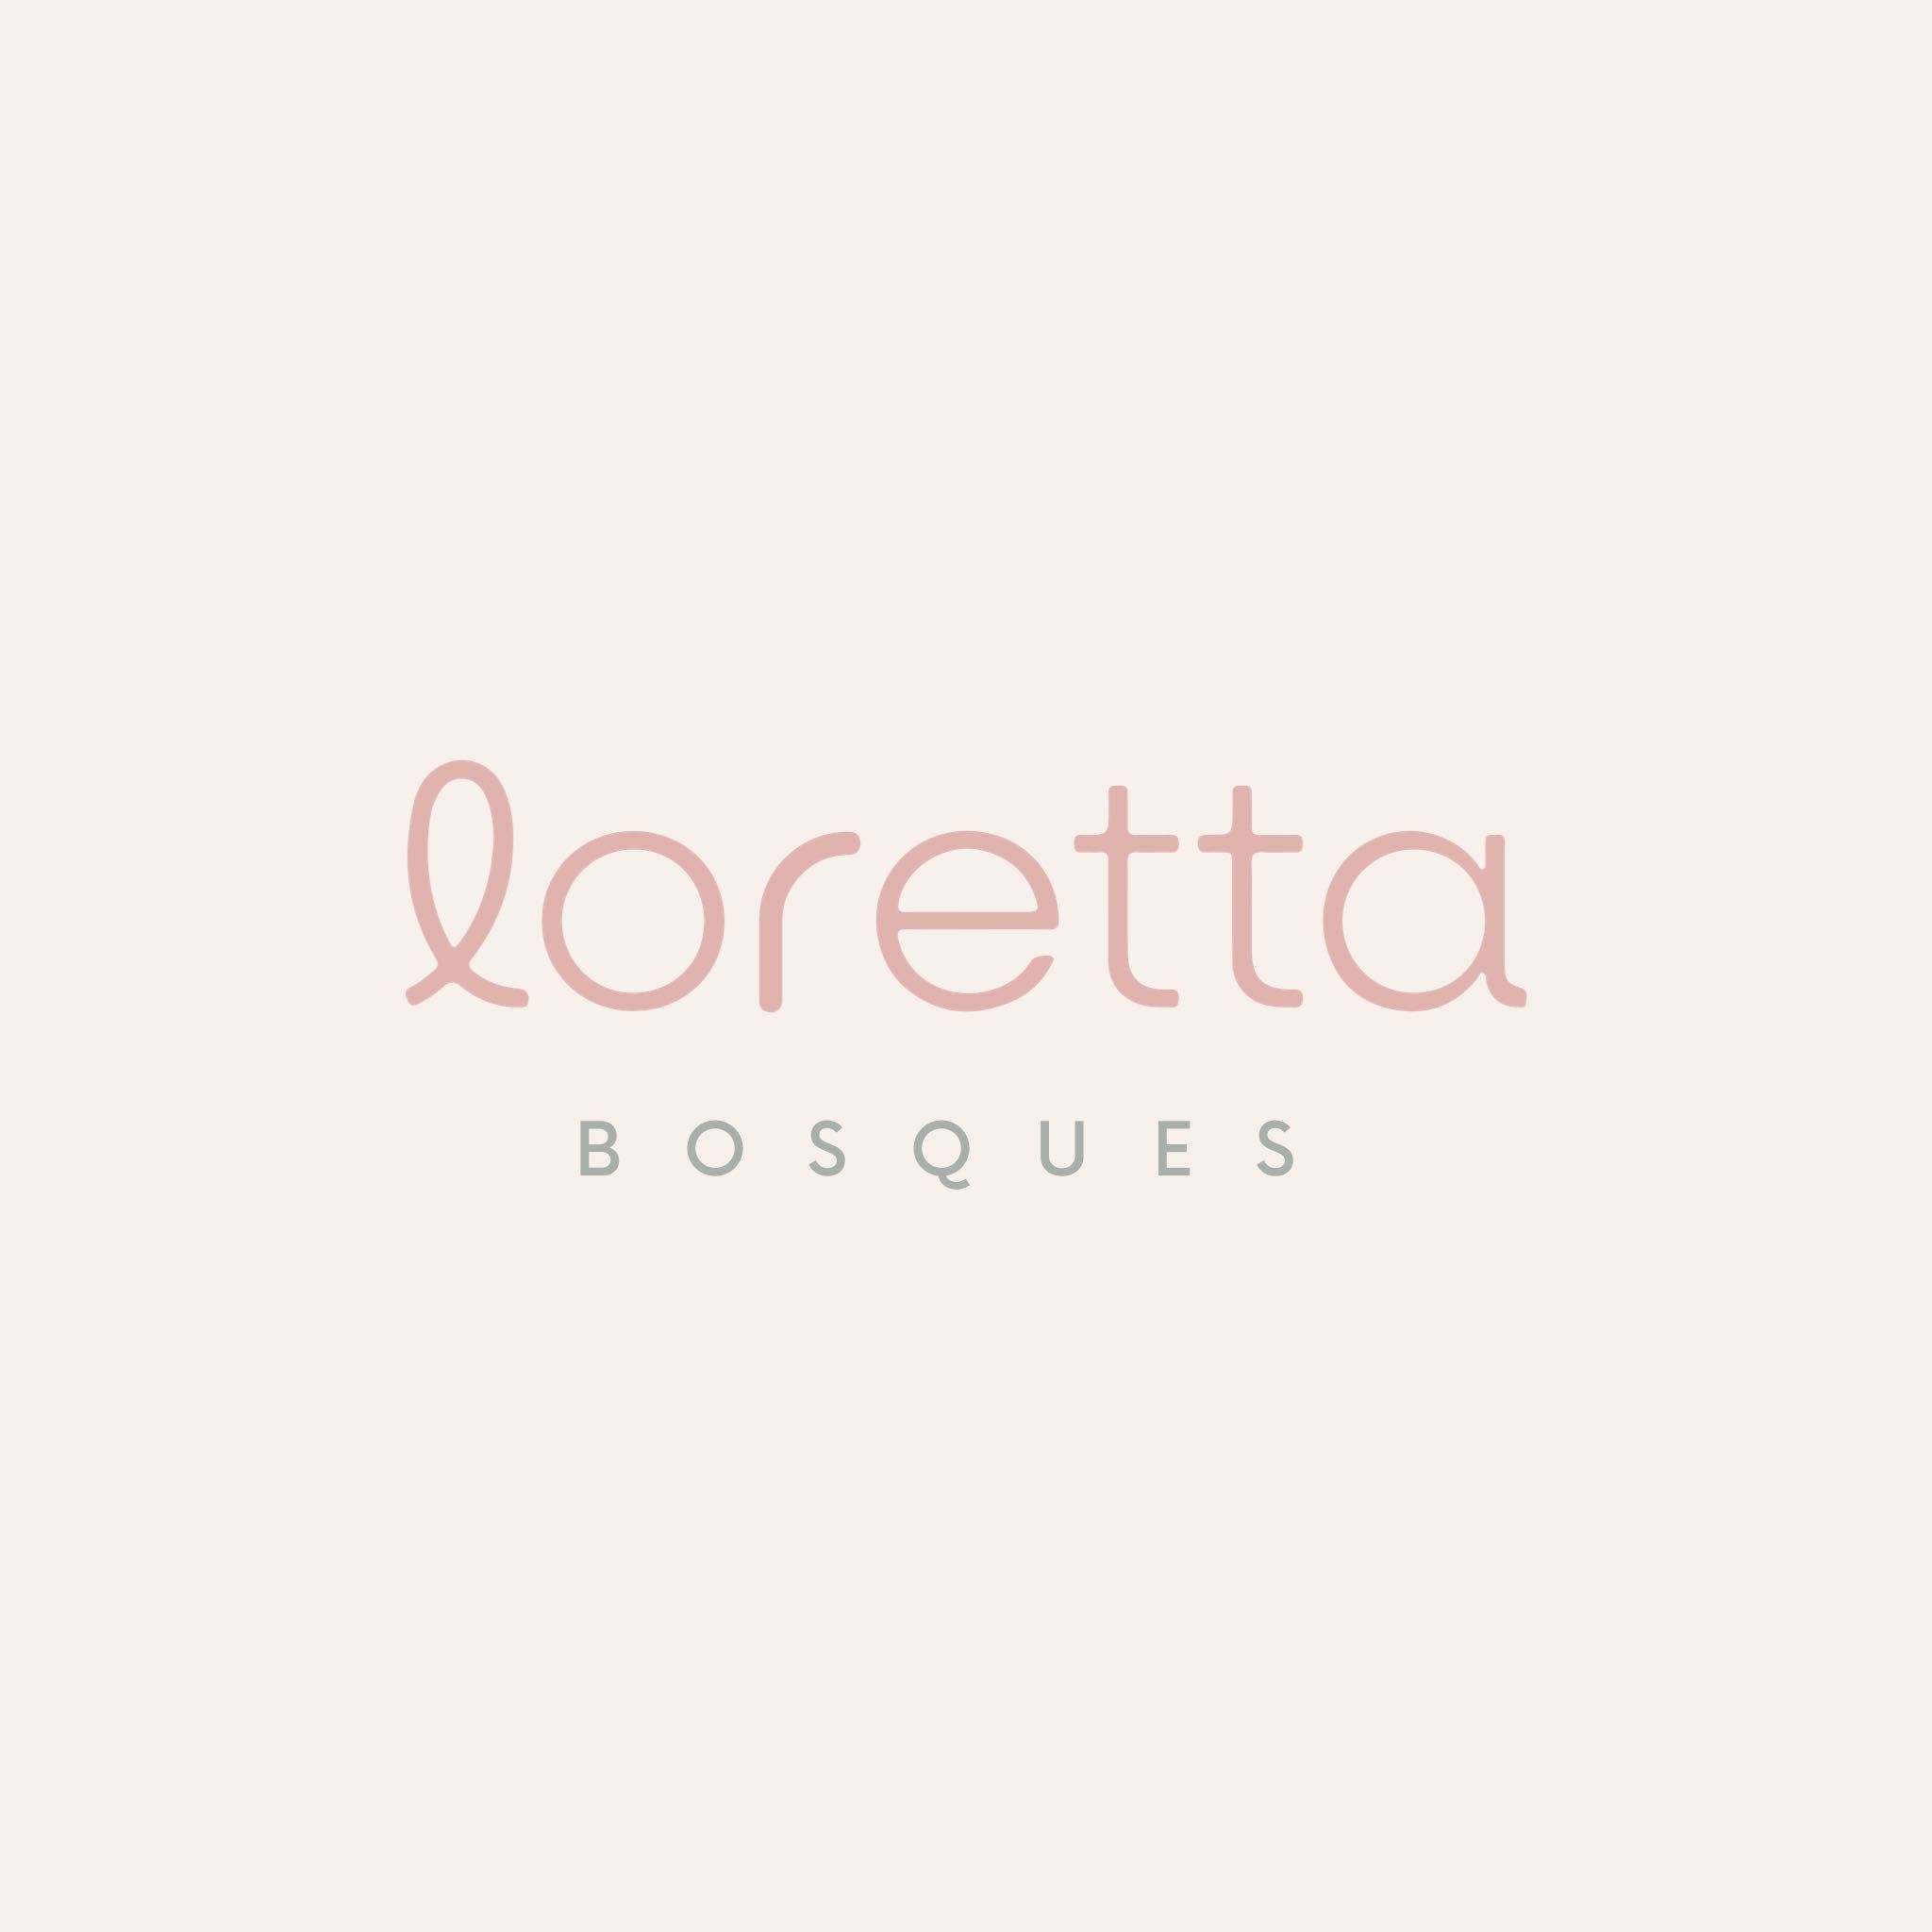 Loretta Coffee & Beauty Bar BOSQUES, Bosque de la Reforma No. 1433, 7G, 05129, Cuajimalpa de Morelos